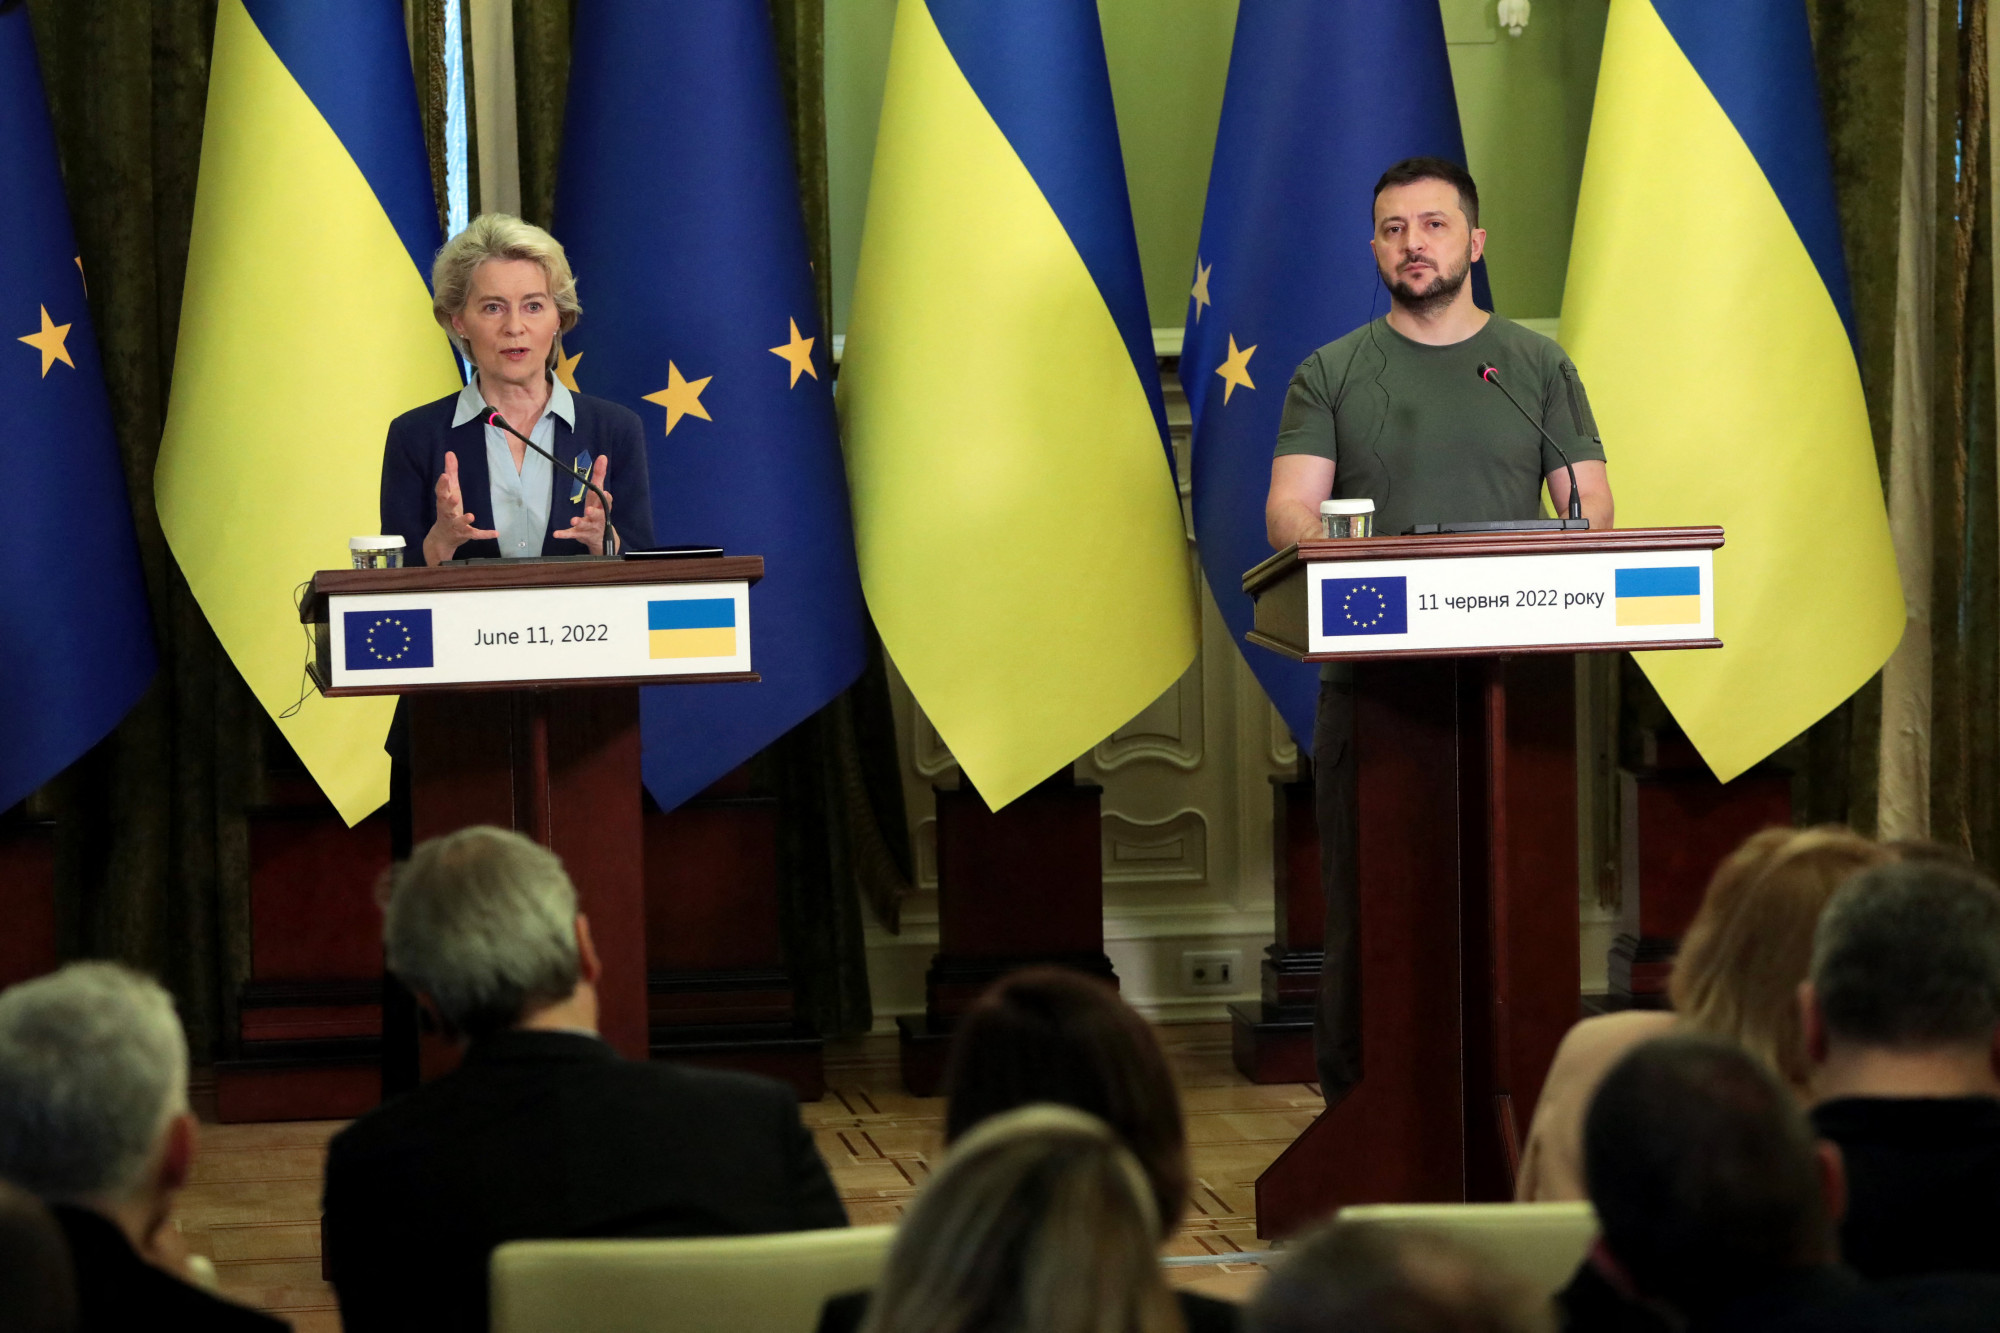 Az EU bármikor visszavonhatja a tagjelölti státuszt Ukrajnától, ha nem tudja kikényszeríteni a szükséges reformokat